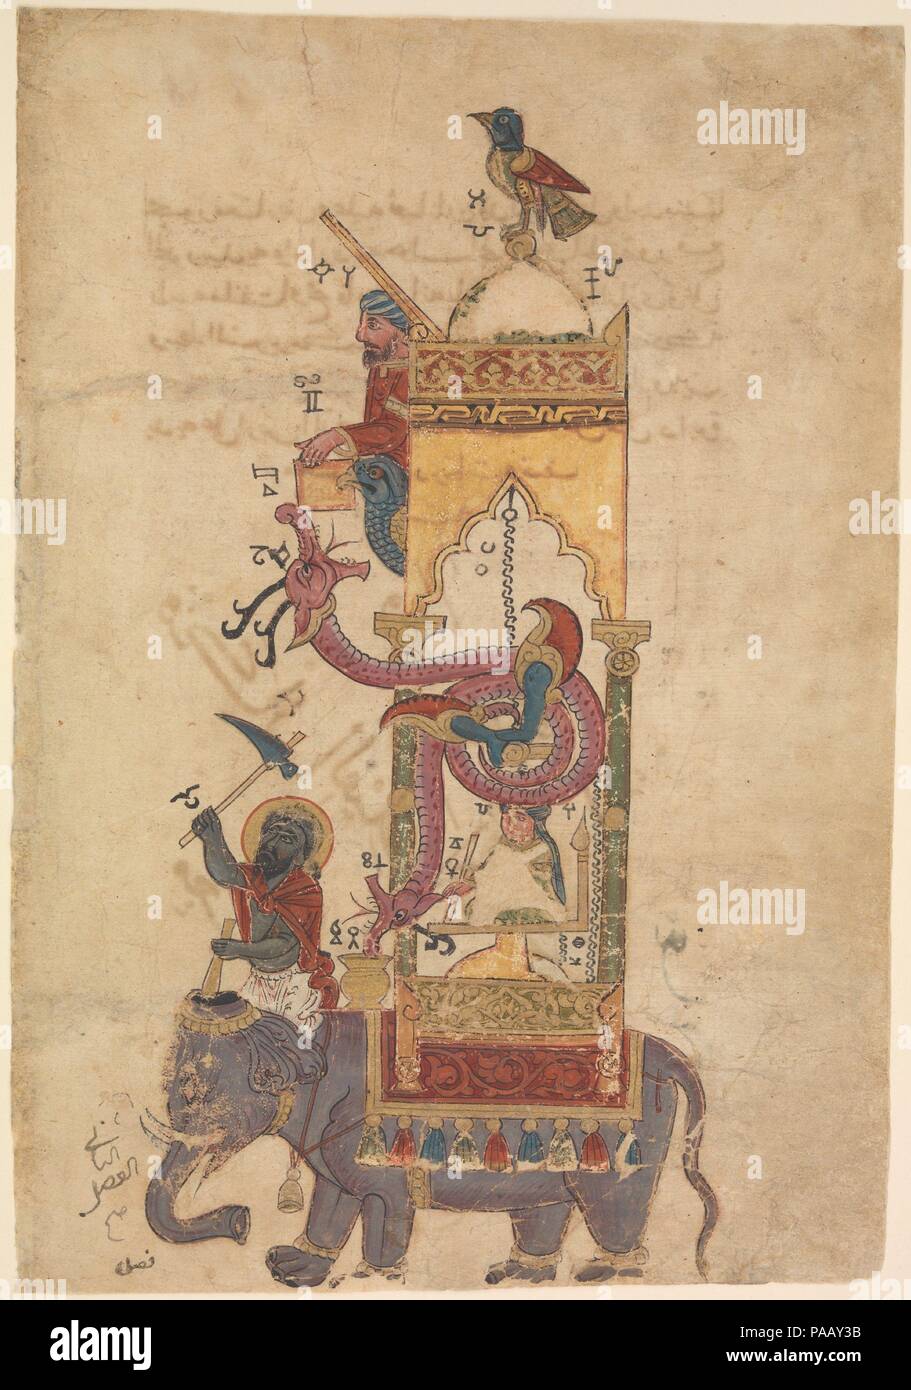 "Le réveil de l'éléphant', Folio à partir d'un livre de la connaissance des dispositifs mécaniques ingénieux par al-Jazari. Auteur : Badi' al-Zaman ibn al-Razzaz al-Jazari (1136-1206). Calligraphe : Farrukh ibn 'Abd al-Latif. Dimensions : 11 x 7 13/16 3/4. (30 x 19,7 cm) mat : 19 1/4 x 14 1/4 in. (48,9 x 36,2 cm) Cadre : 20 1/4 x 15 1/4 in. (51,4 x 38,7 cm). Date : du 715 de l'hégire/A.D. 1315. Cette page provient d'un traité sur les appareils fantastique inventé par l'auteur al-Jazari. Son réveil de l'éléphant était particulièrement compliquée : chaque demi-heure, l'oiseau sur le dôme sifflé ; l'homme ci-dessous a échappé une balle dans le dragon's m Banque D'Images